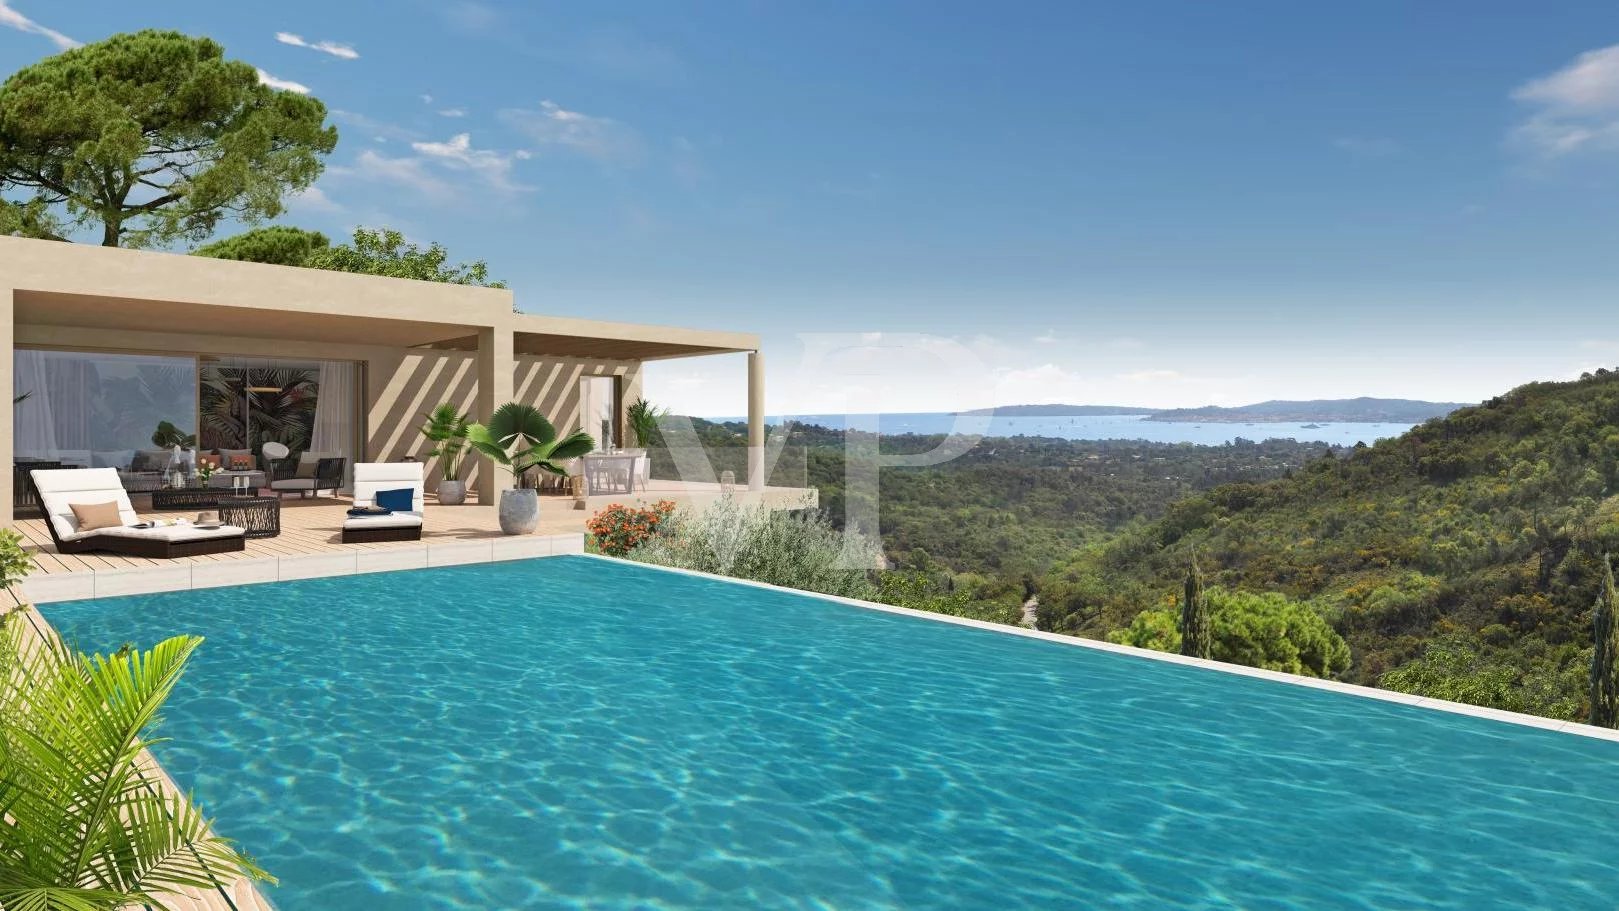 Villa neuve de style contemporain avec vue sur la baie de Saint Tropez